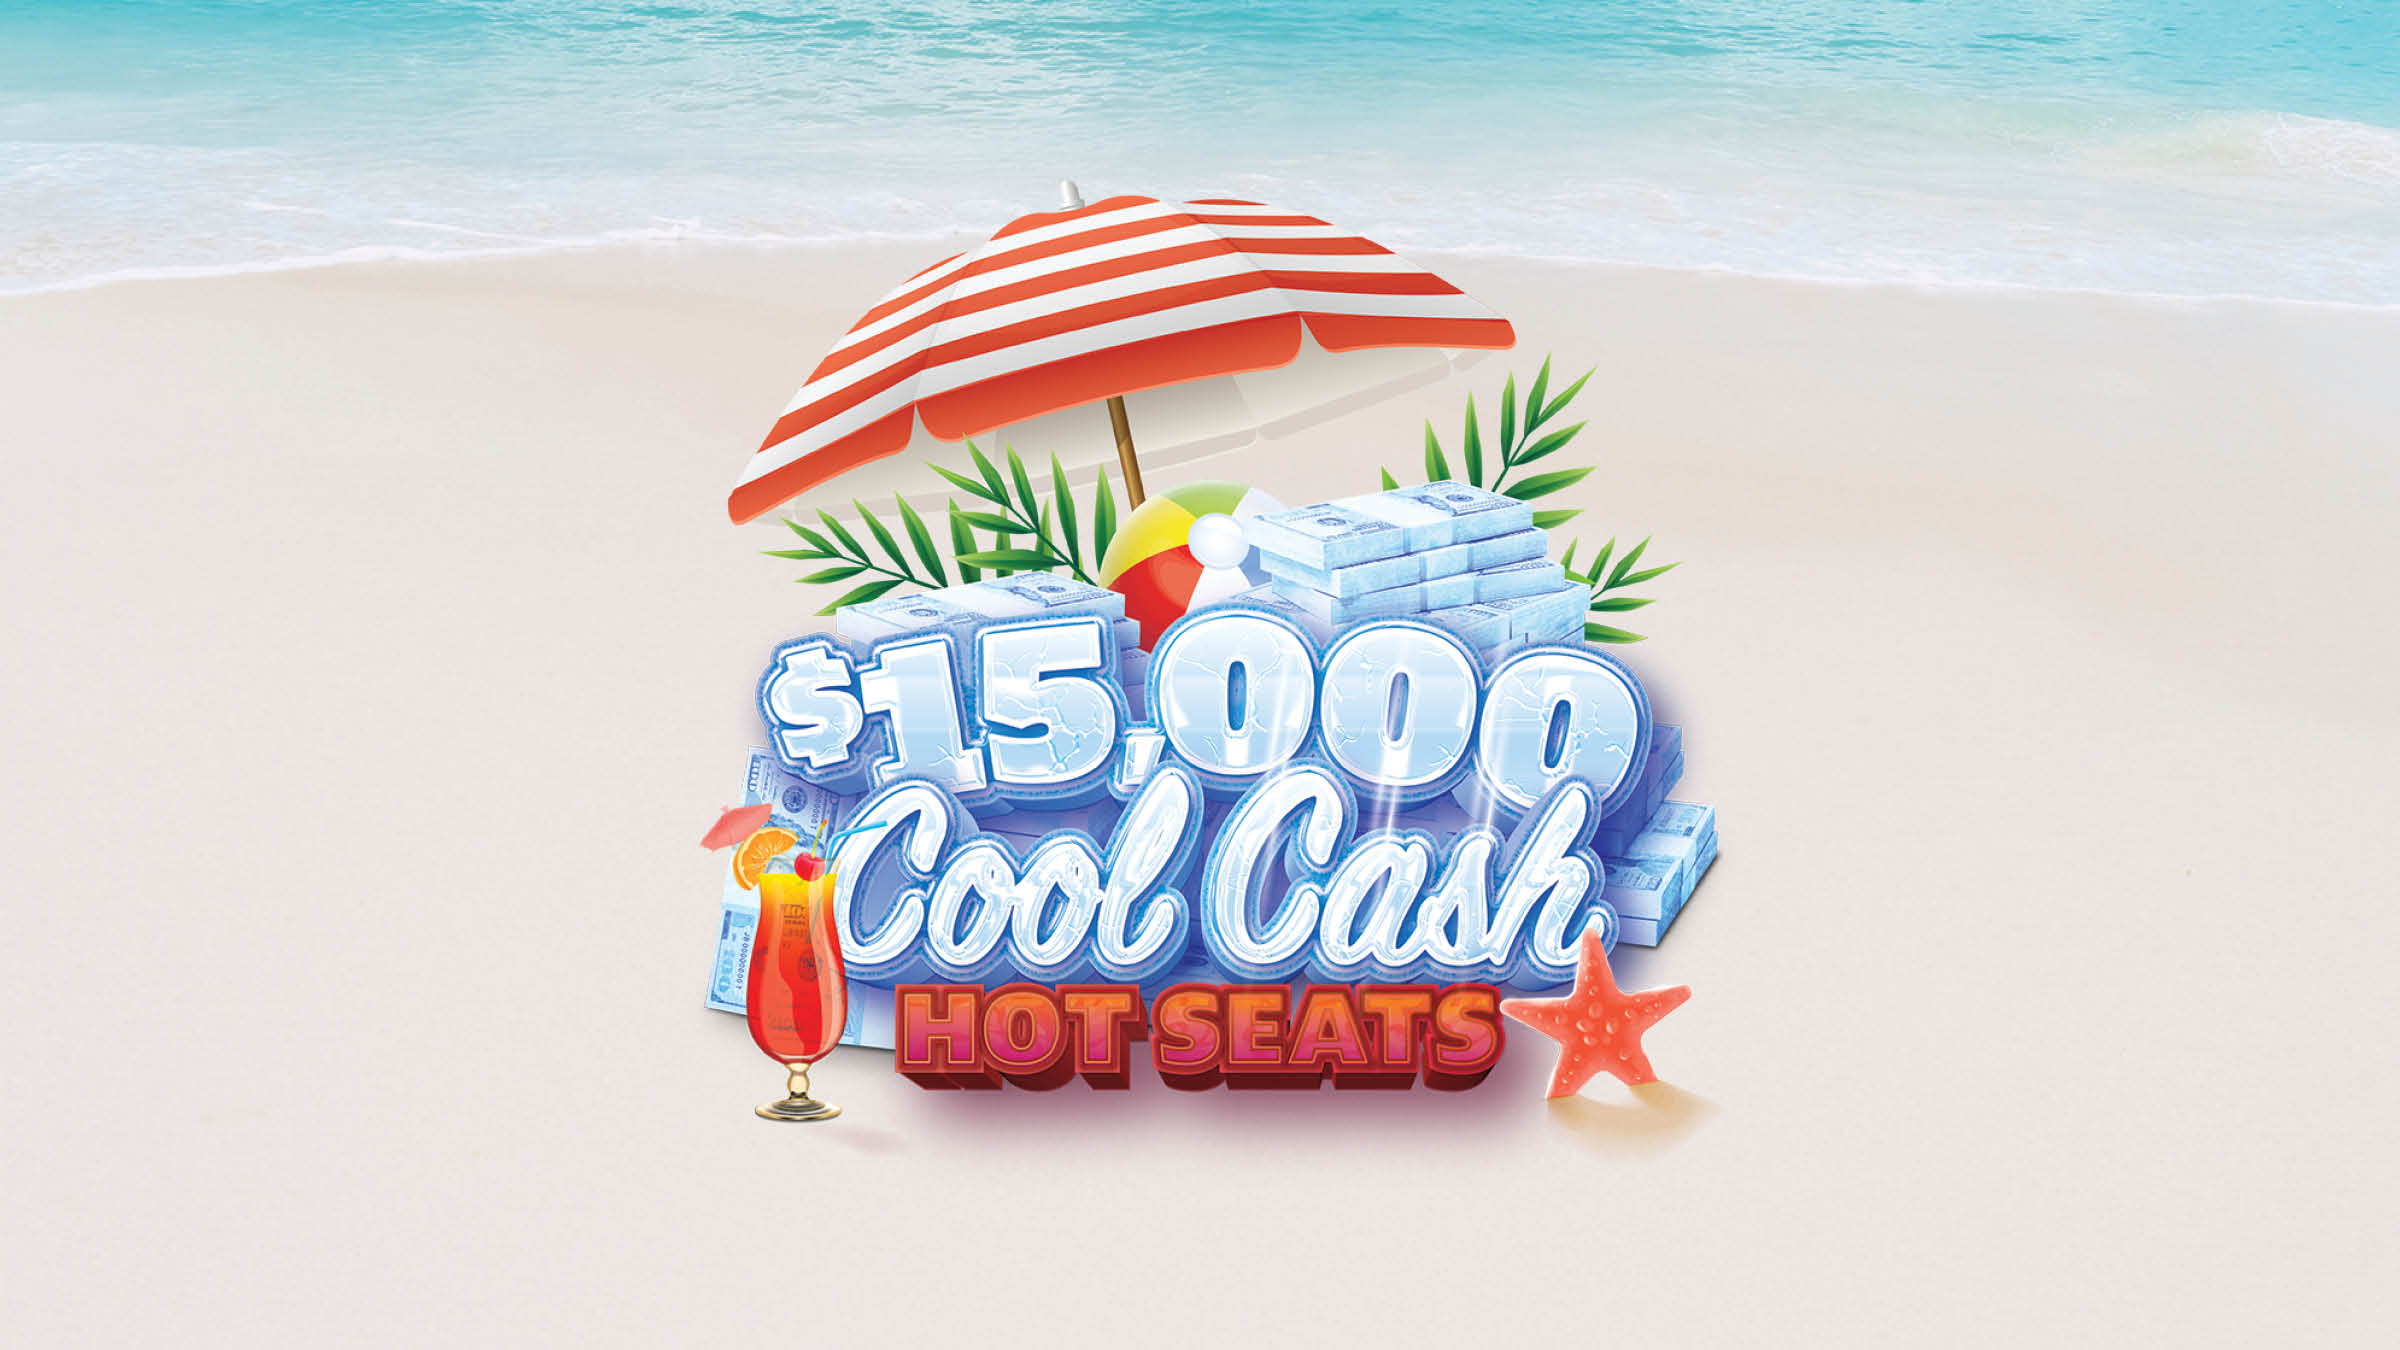 $15,000 COOL CASH HOT SEATS